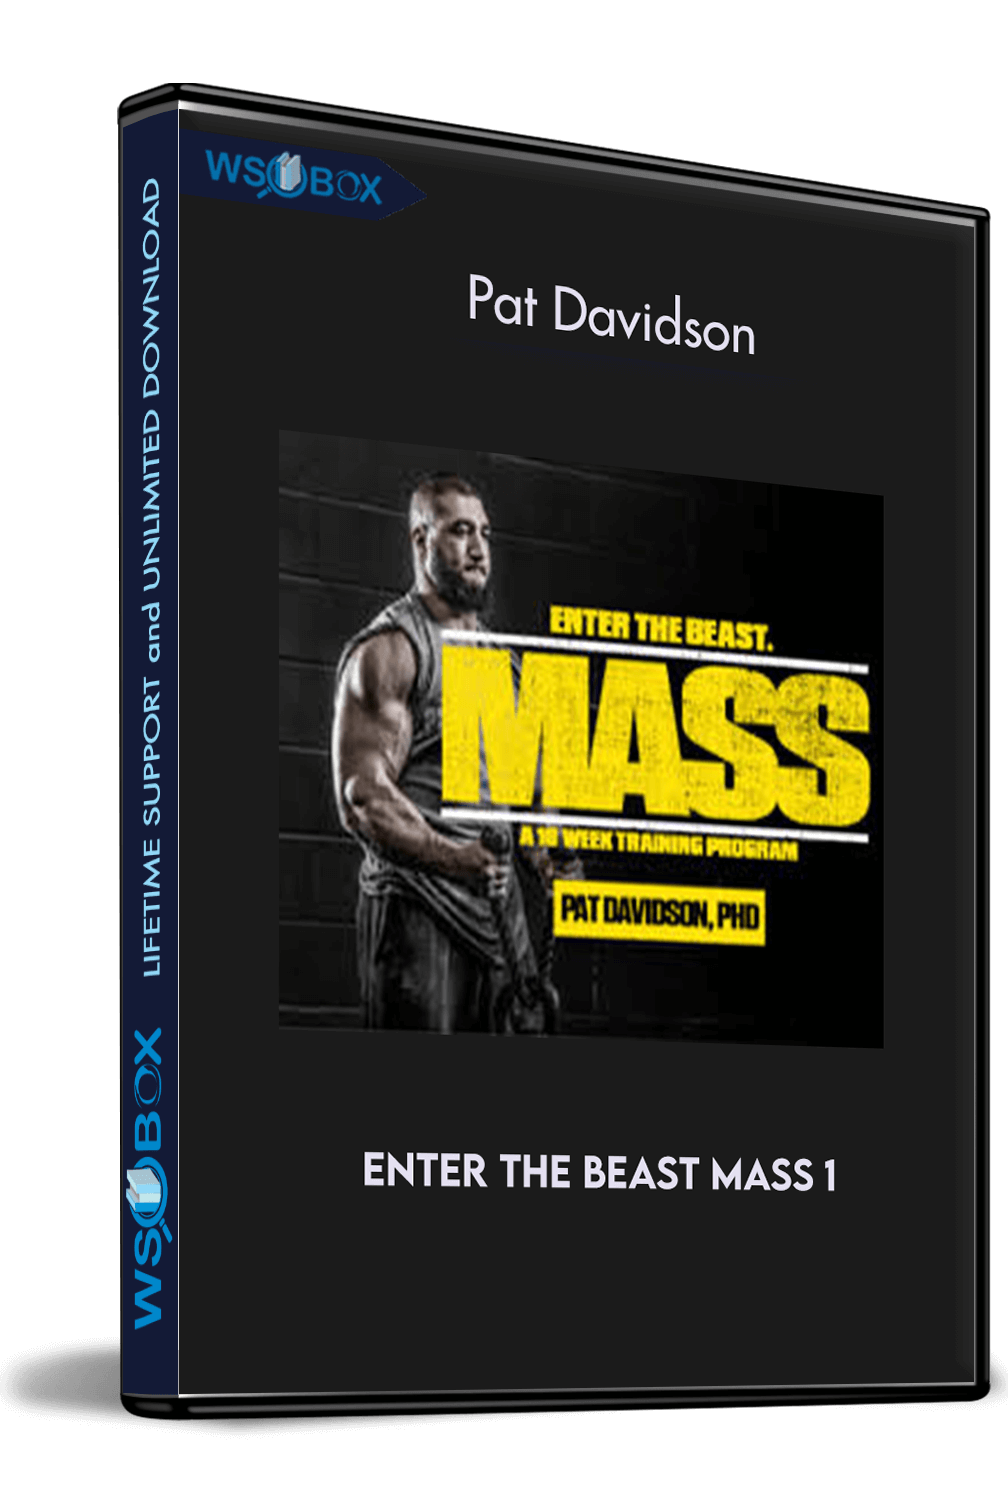 Enter The Beast Mass 1 – Pat Davidson